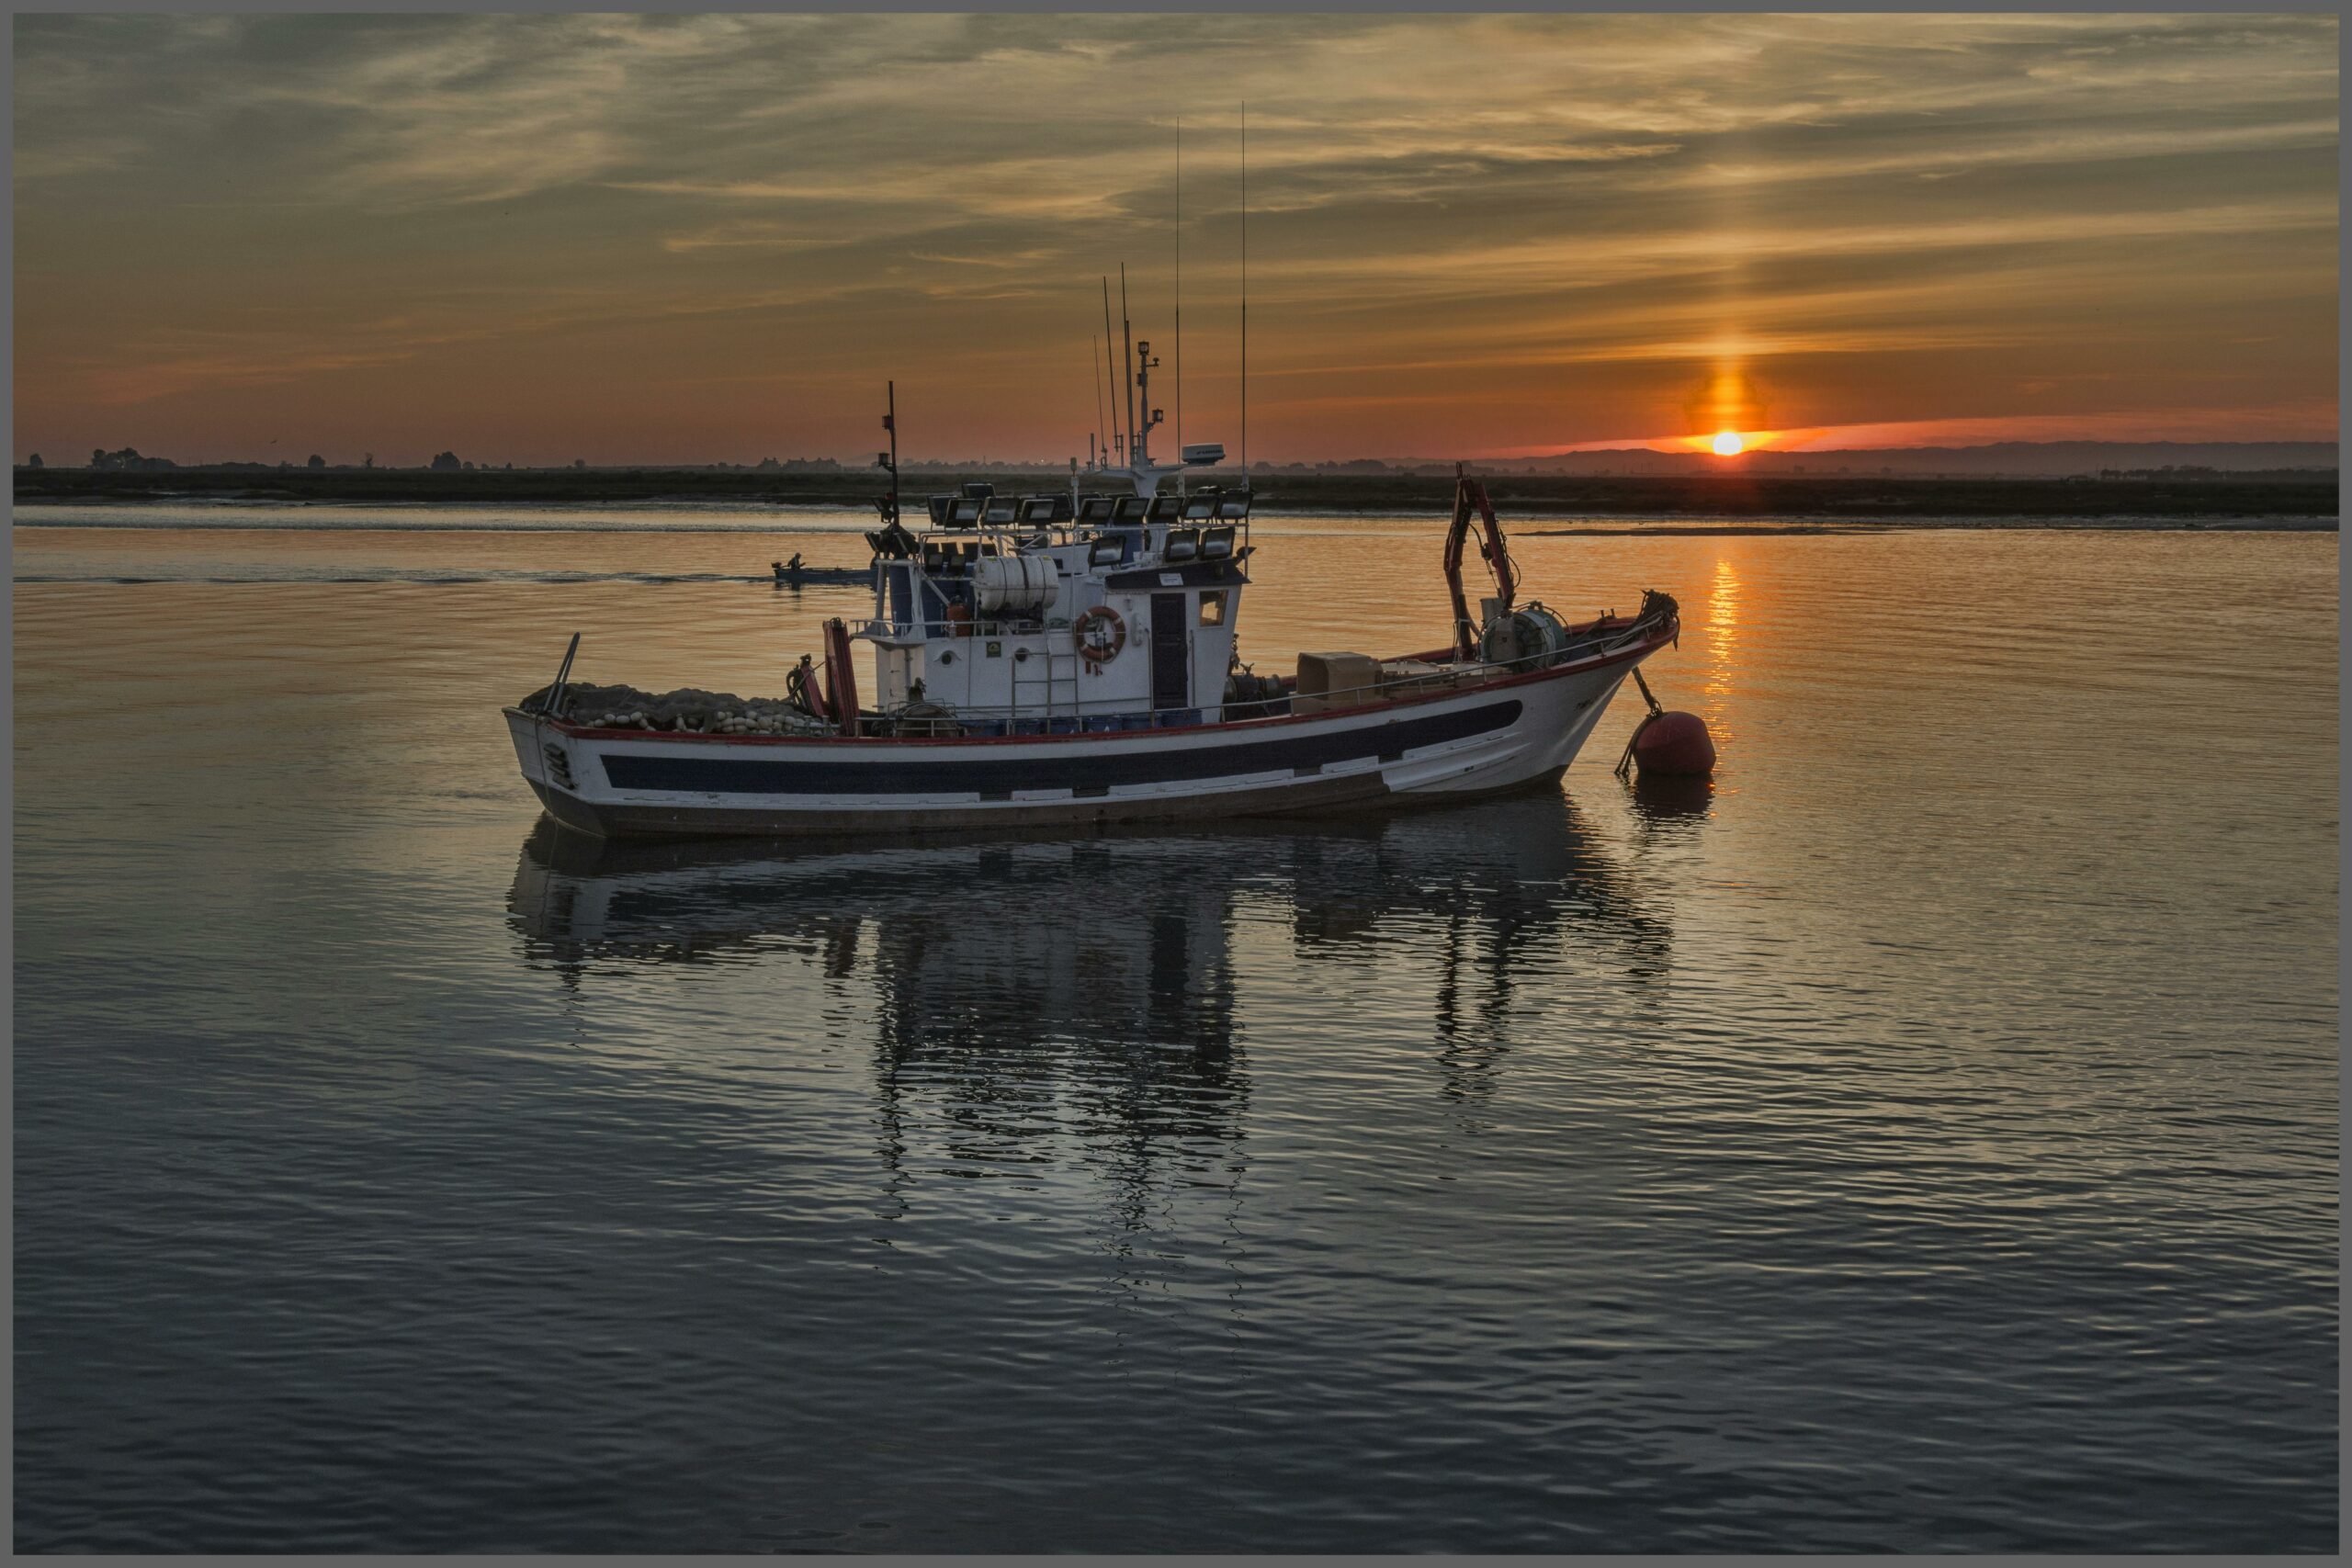 Un bateau de pêche ancré sur l'eau calme au crépuscule, avec le soleil se couchant à l'horizon et reflétant ses couleurs dorées sur la surface de l'eau.